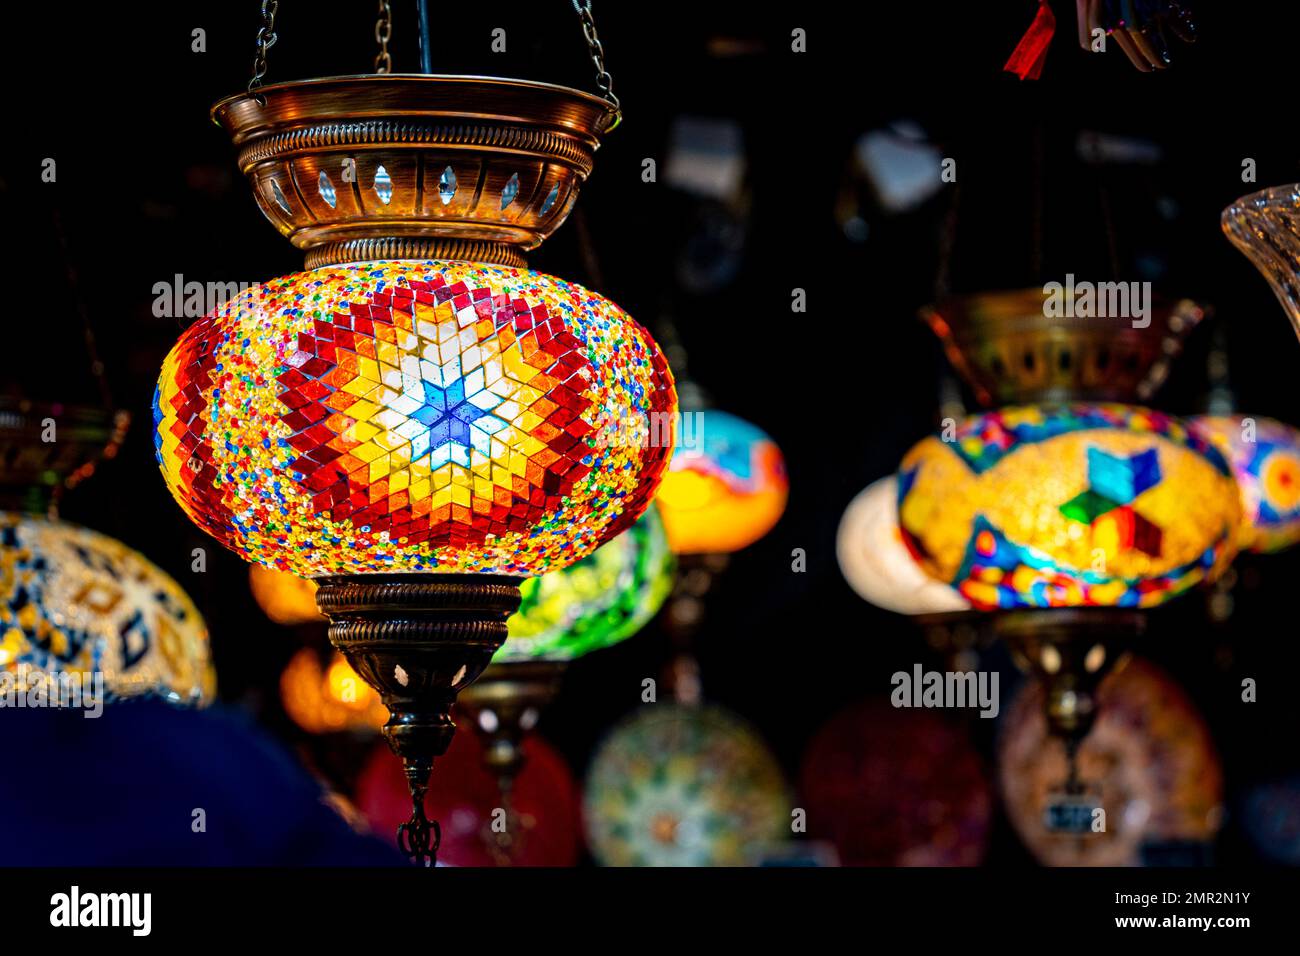 Farbenfrohe türkische Lampen auf einem Markt Stockfoto